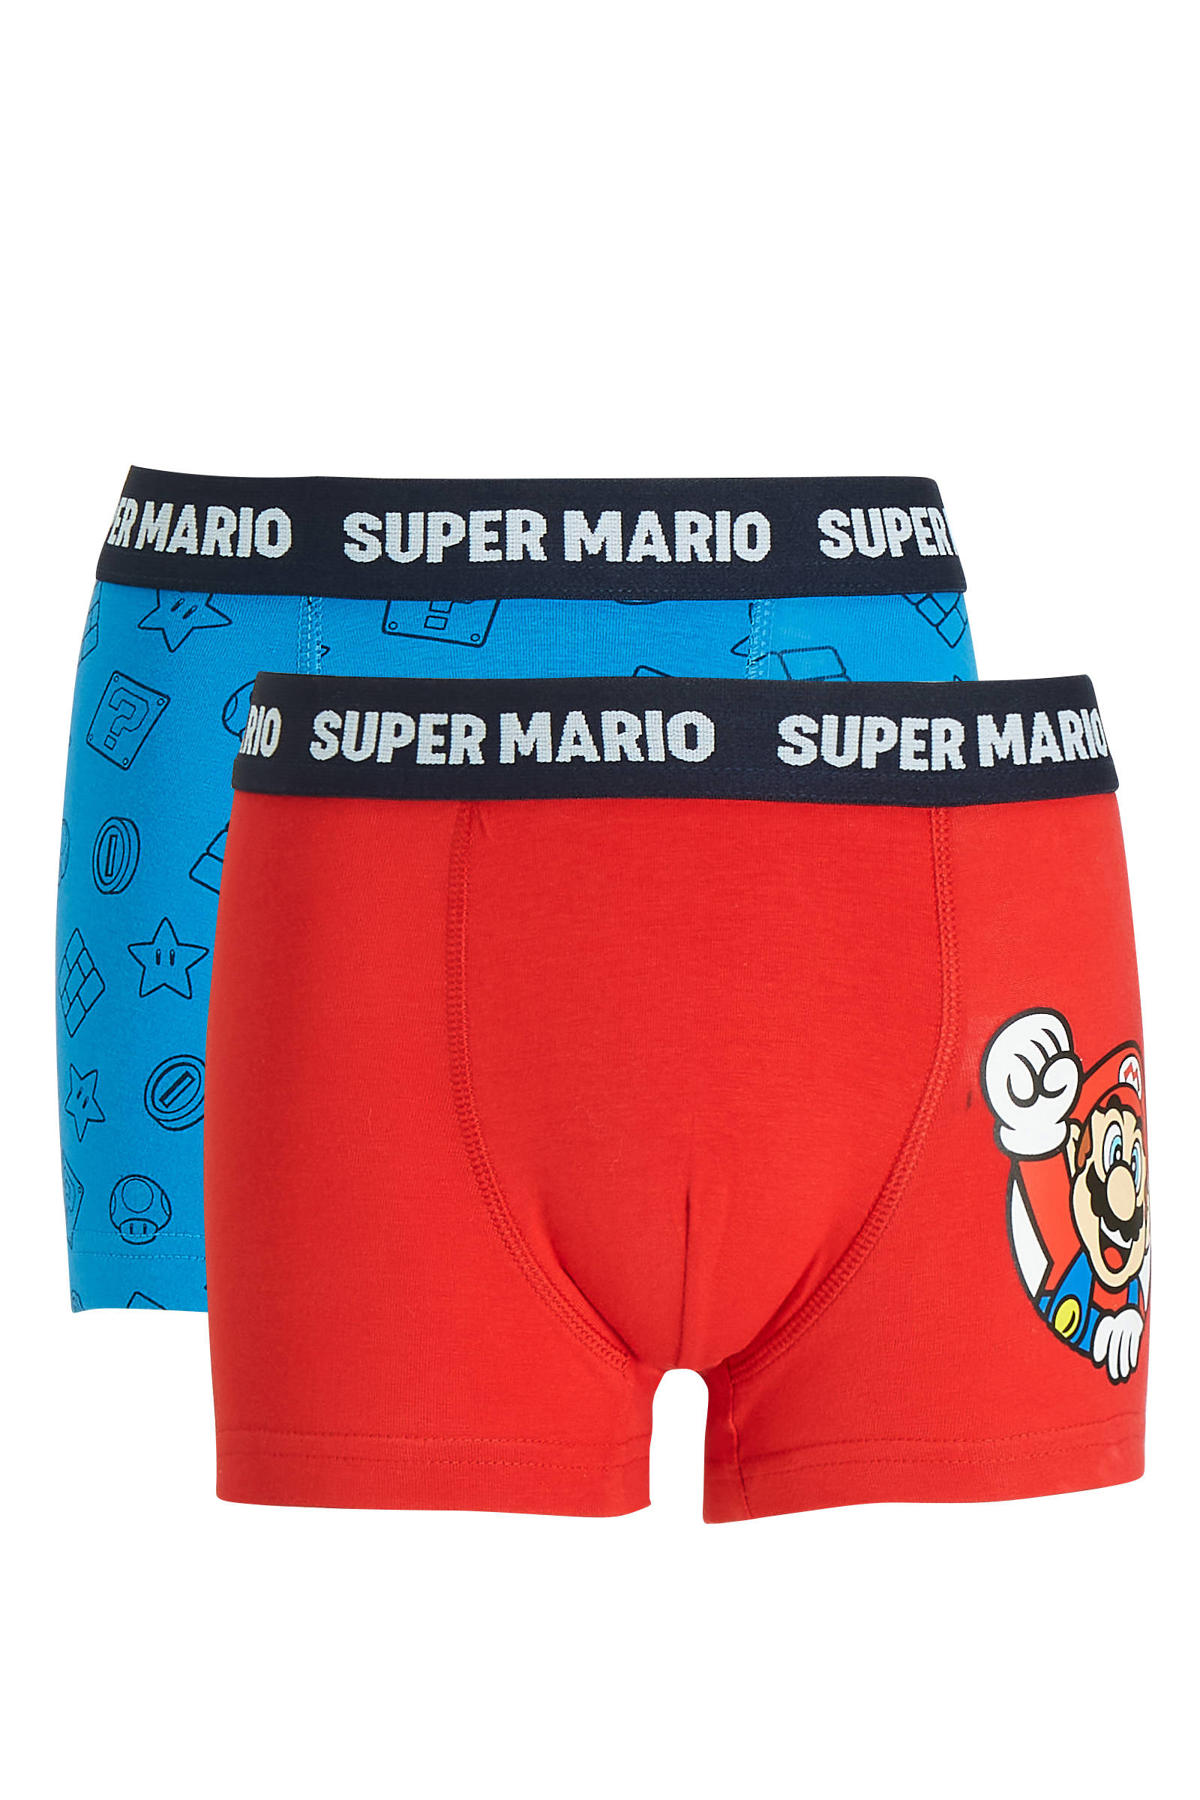 C&A Super Mario boxershort - 2 rood/blauw wehkamp